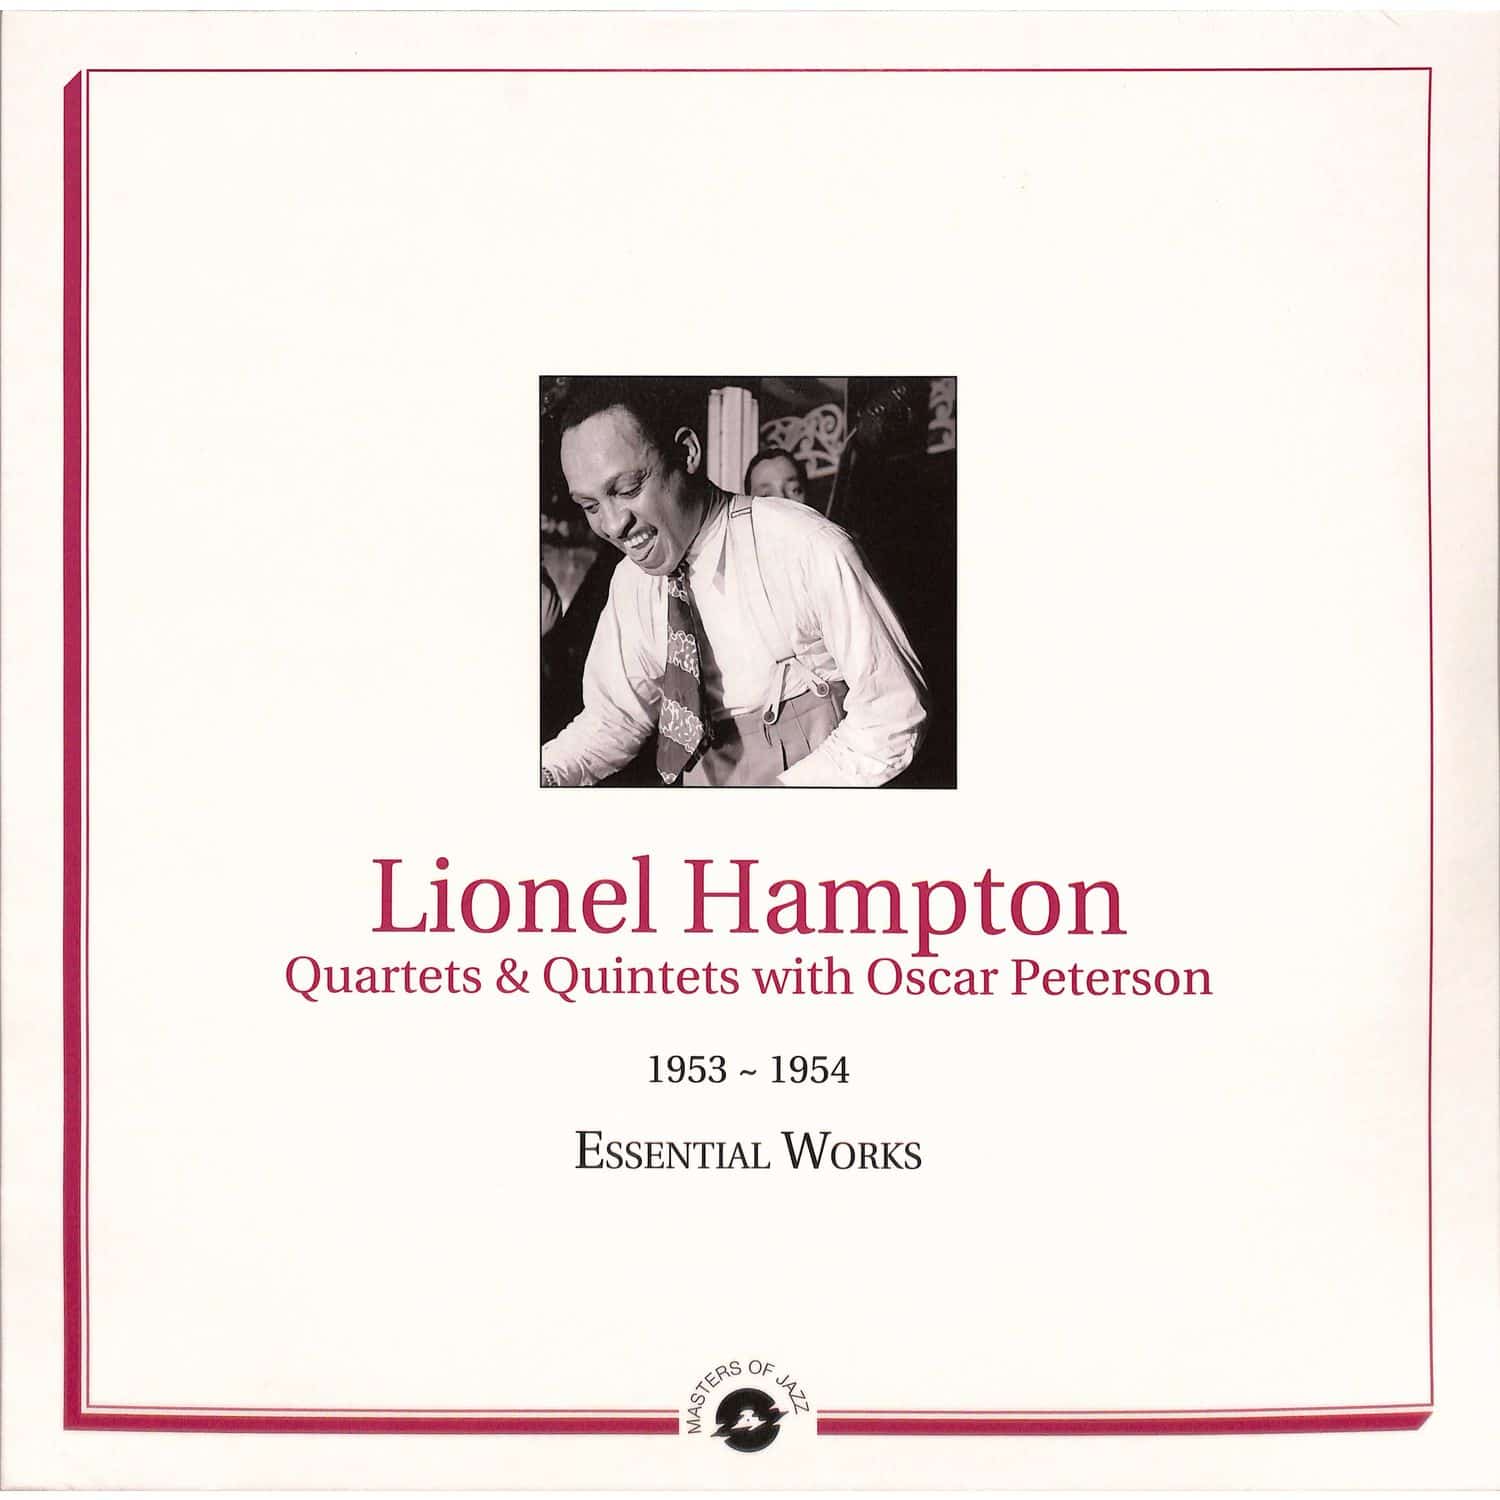  Lionel Hampton - ESSENTIAL WORKS: 1953-1954 